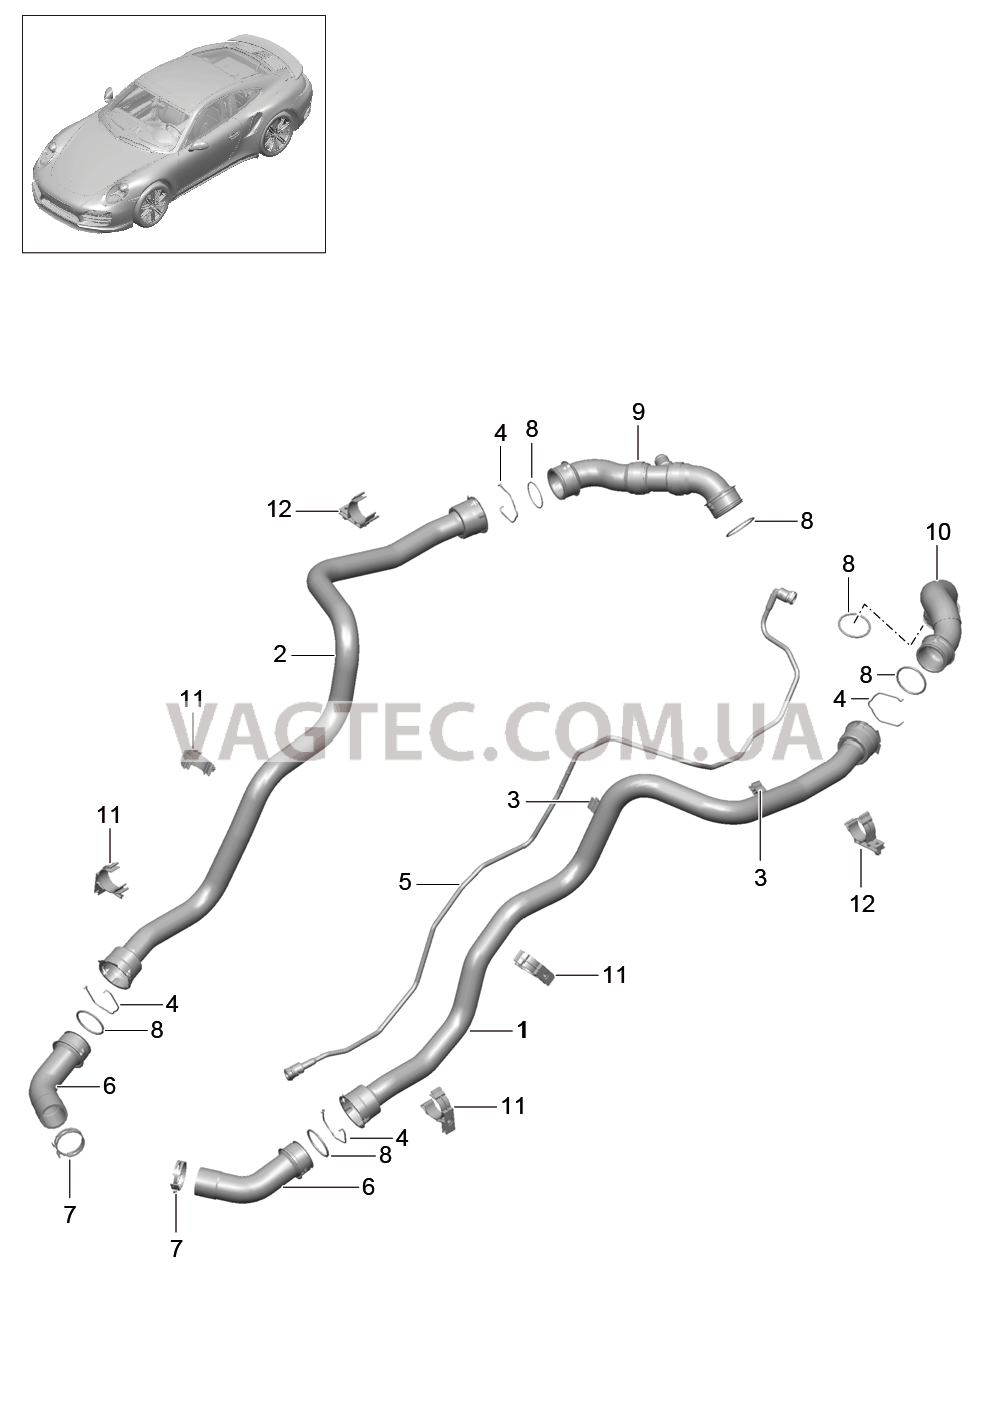 105-007 Водяное охлаждение 1, Задняя подвеска для PORSCHE Porsche991Turbo 2014-2017